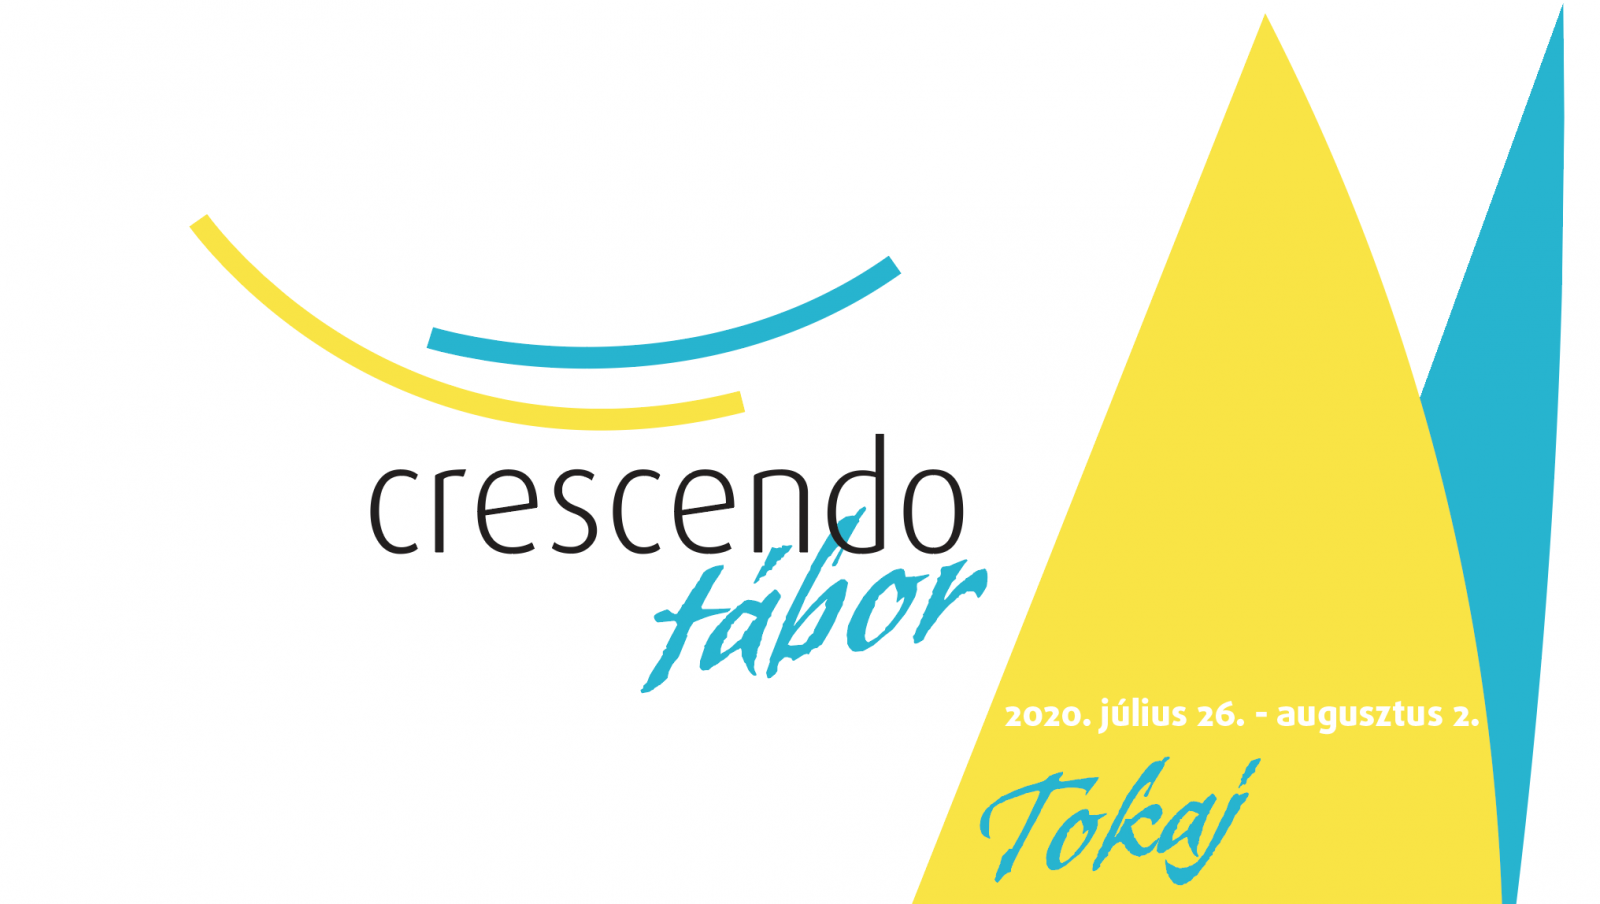 Crescendo Tabor 2020